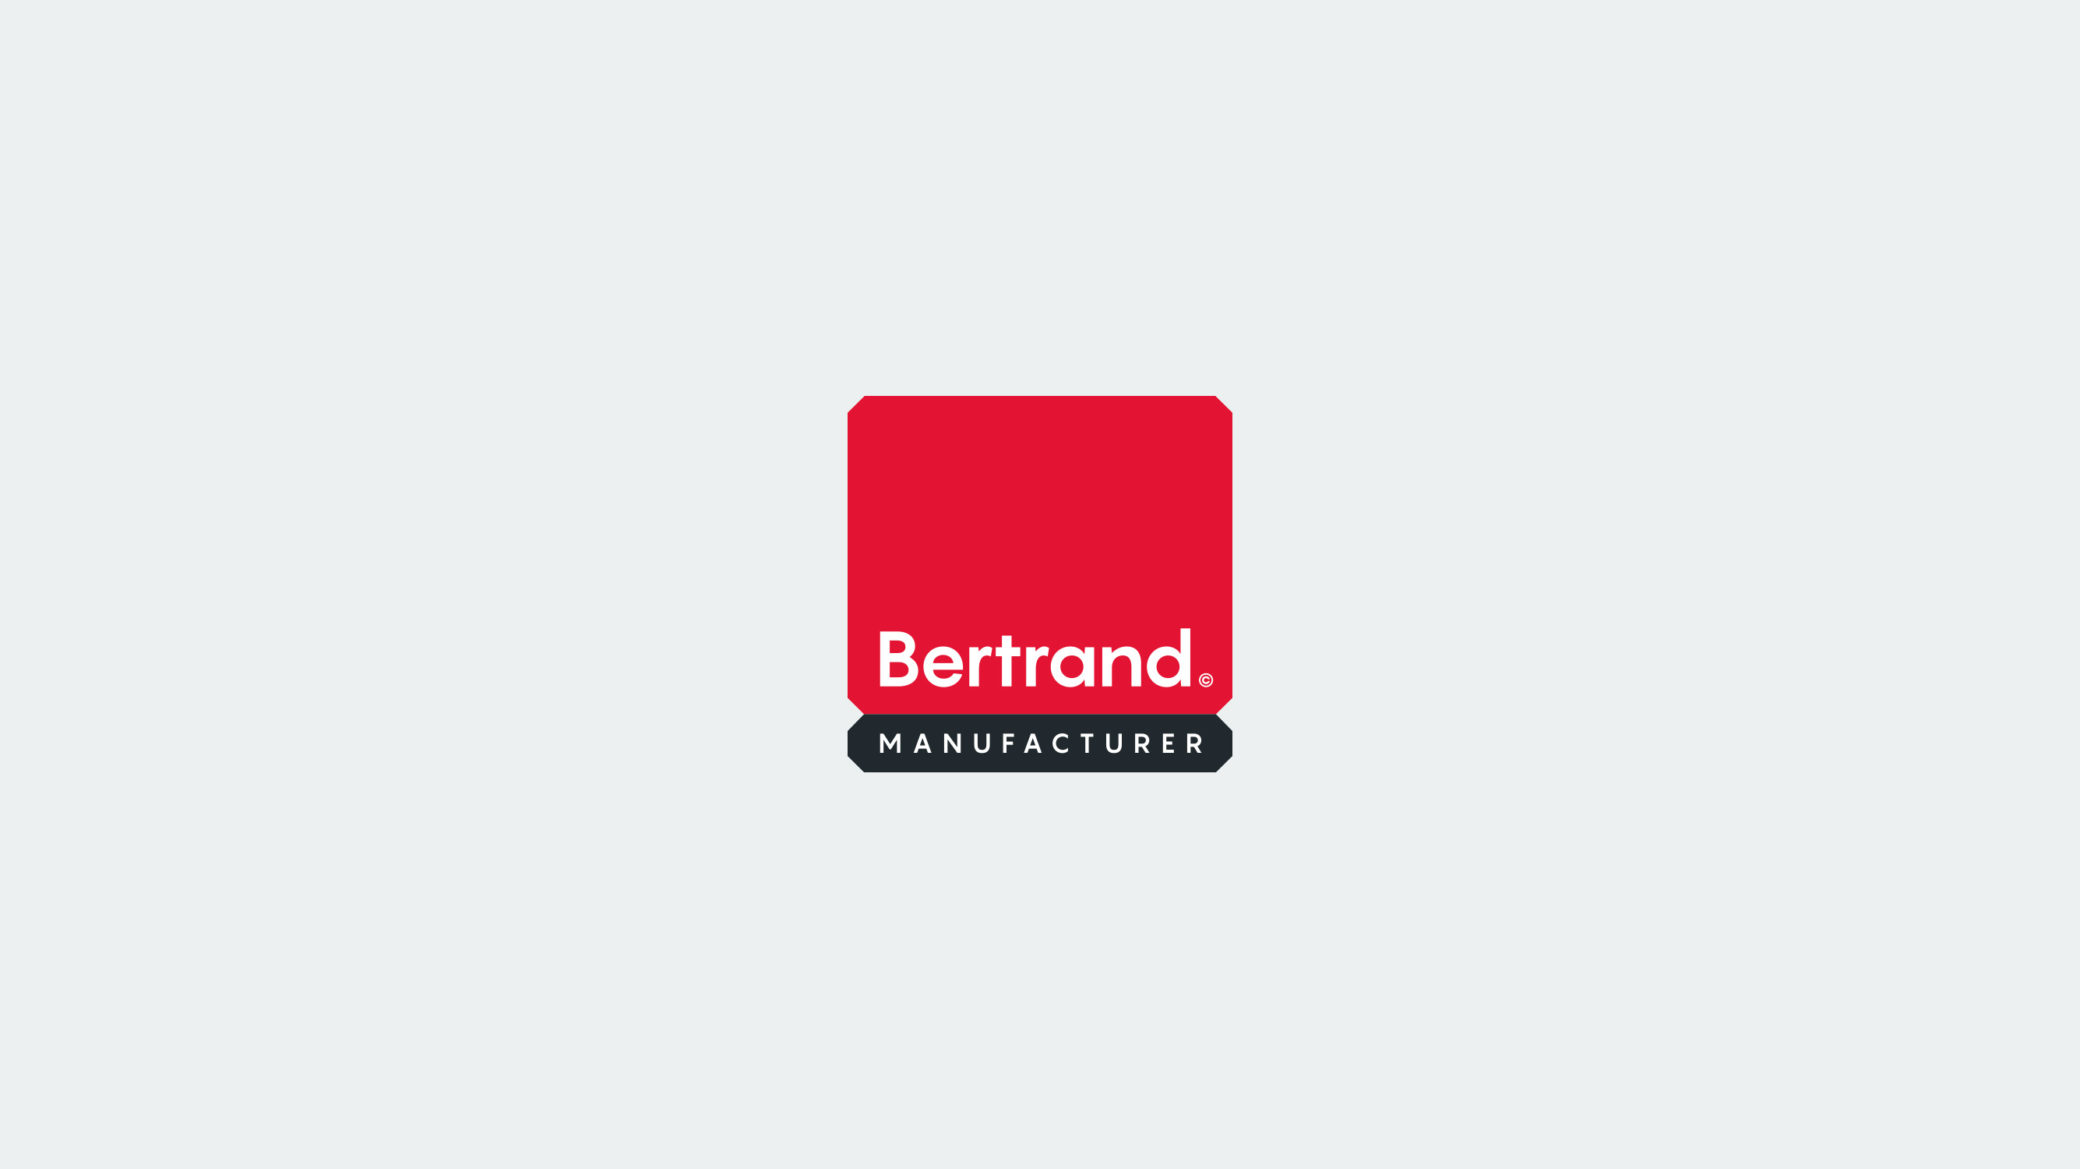 BertrandManufacturer_Assets_1